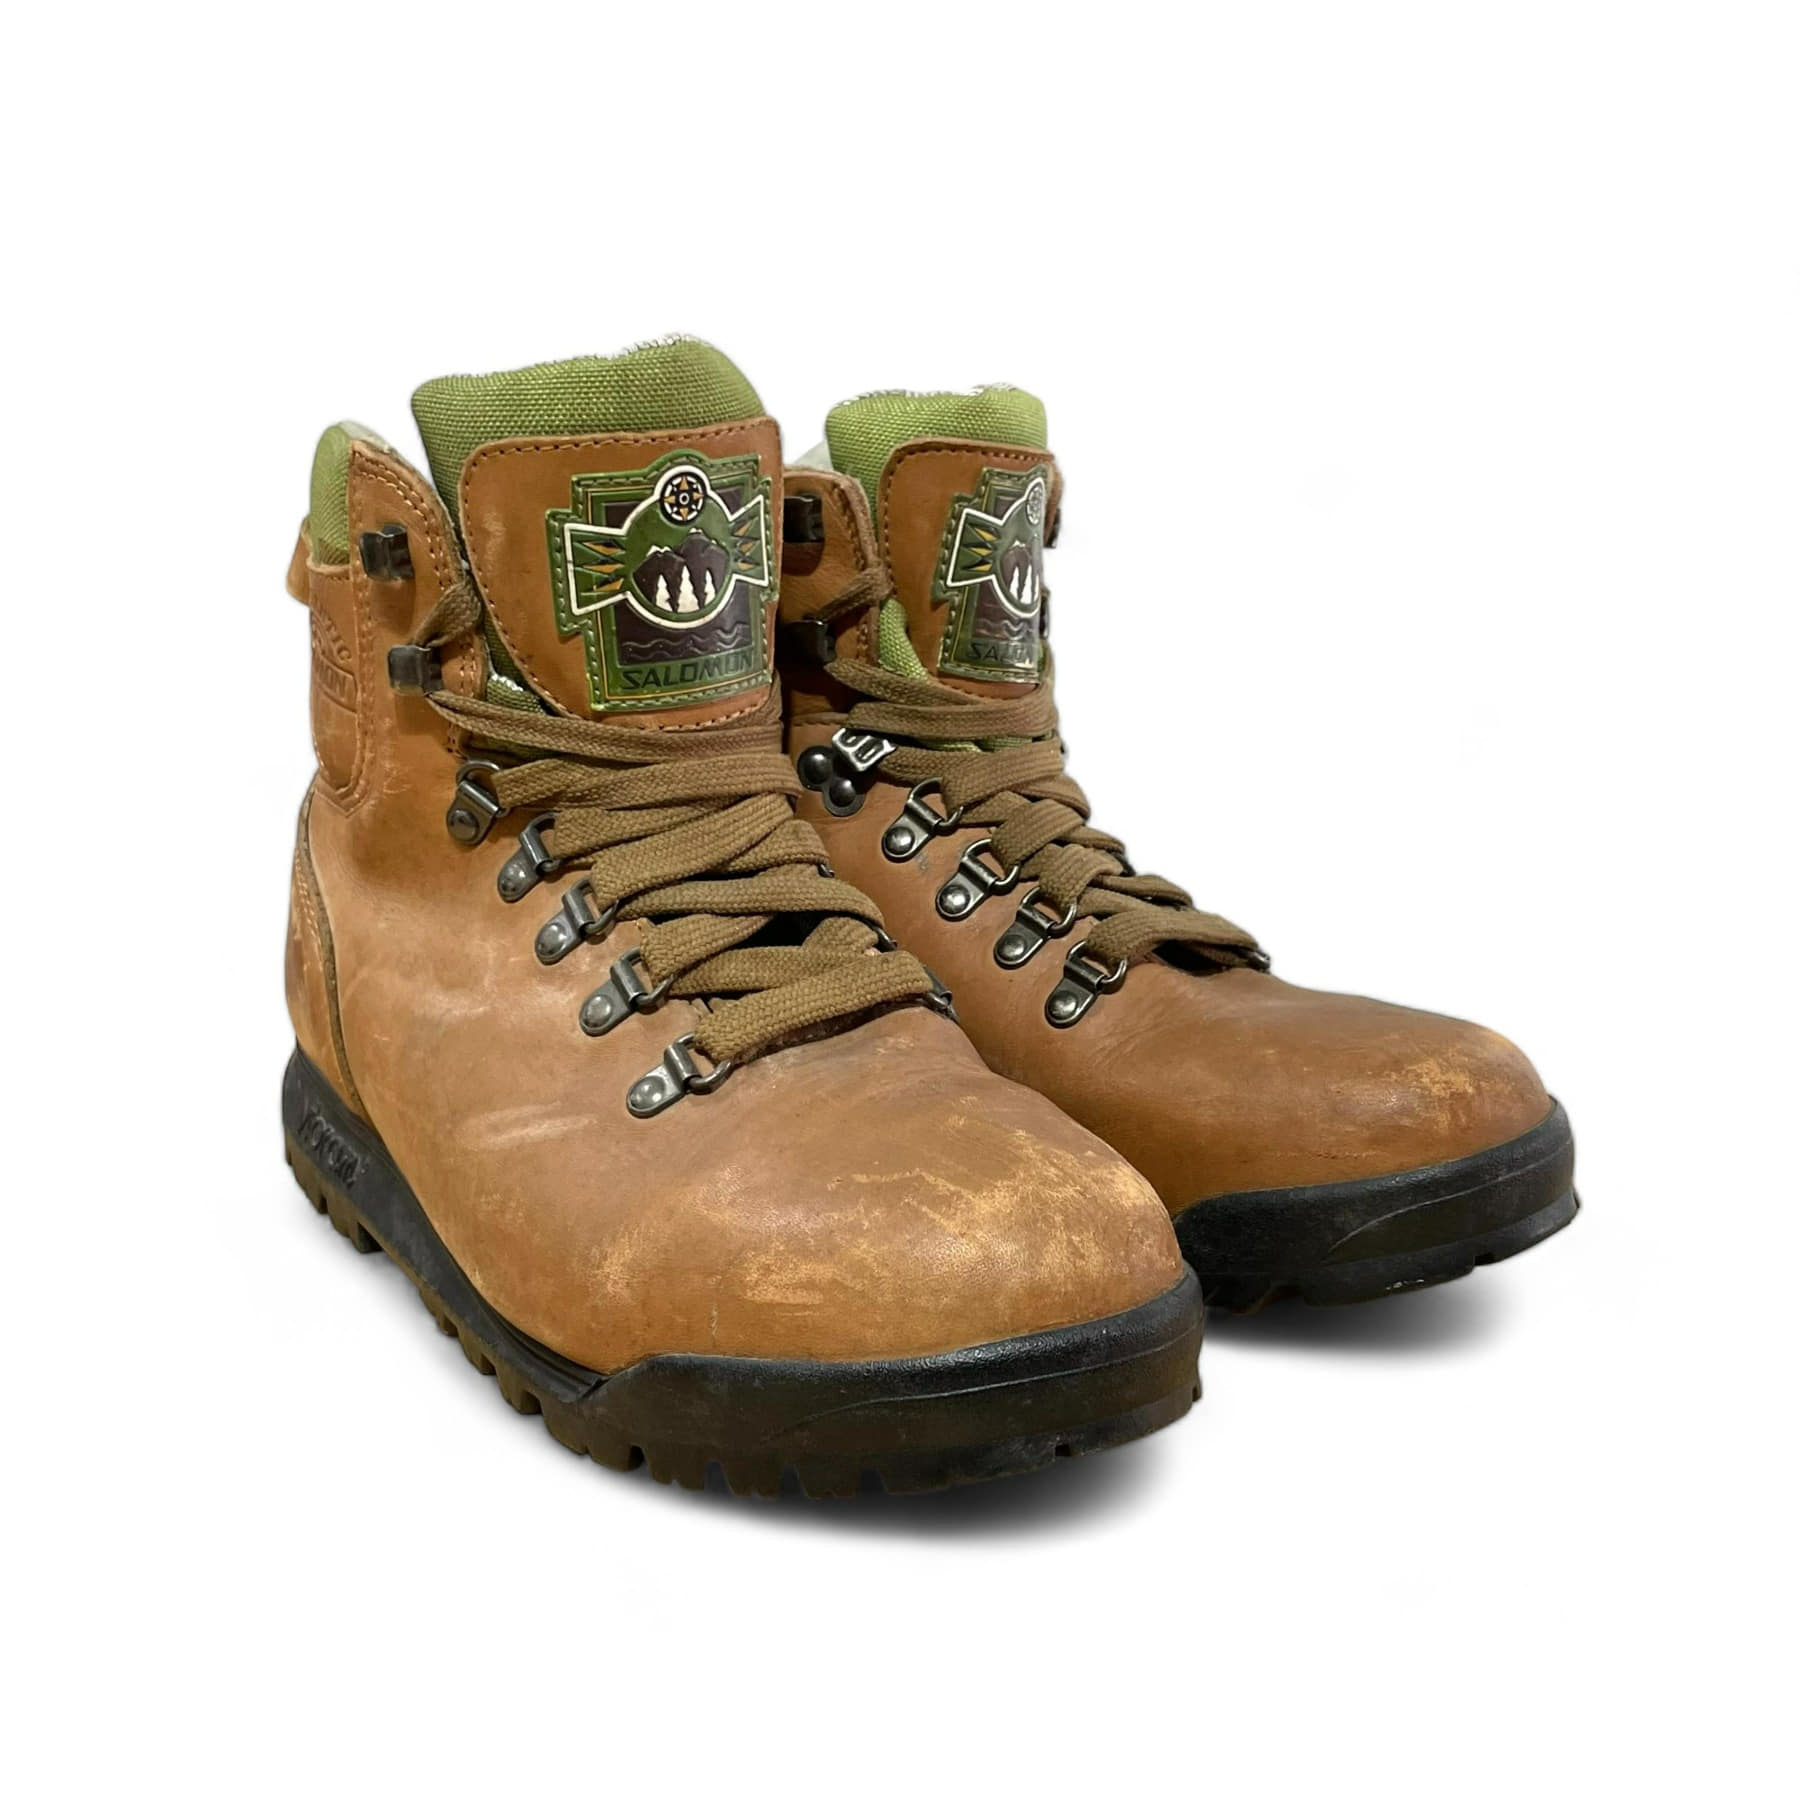 Vintage Salomon Clima Fit Boots - 265mm